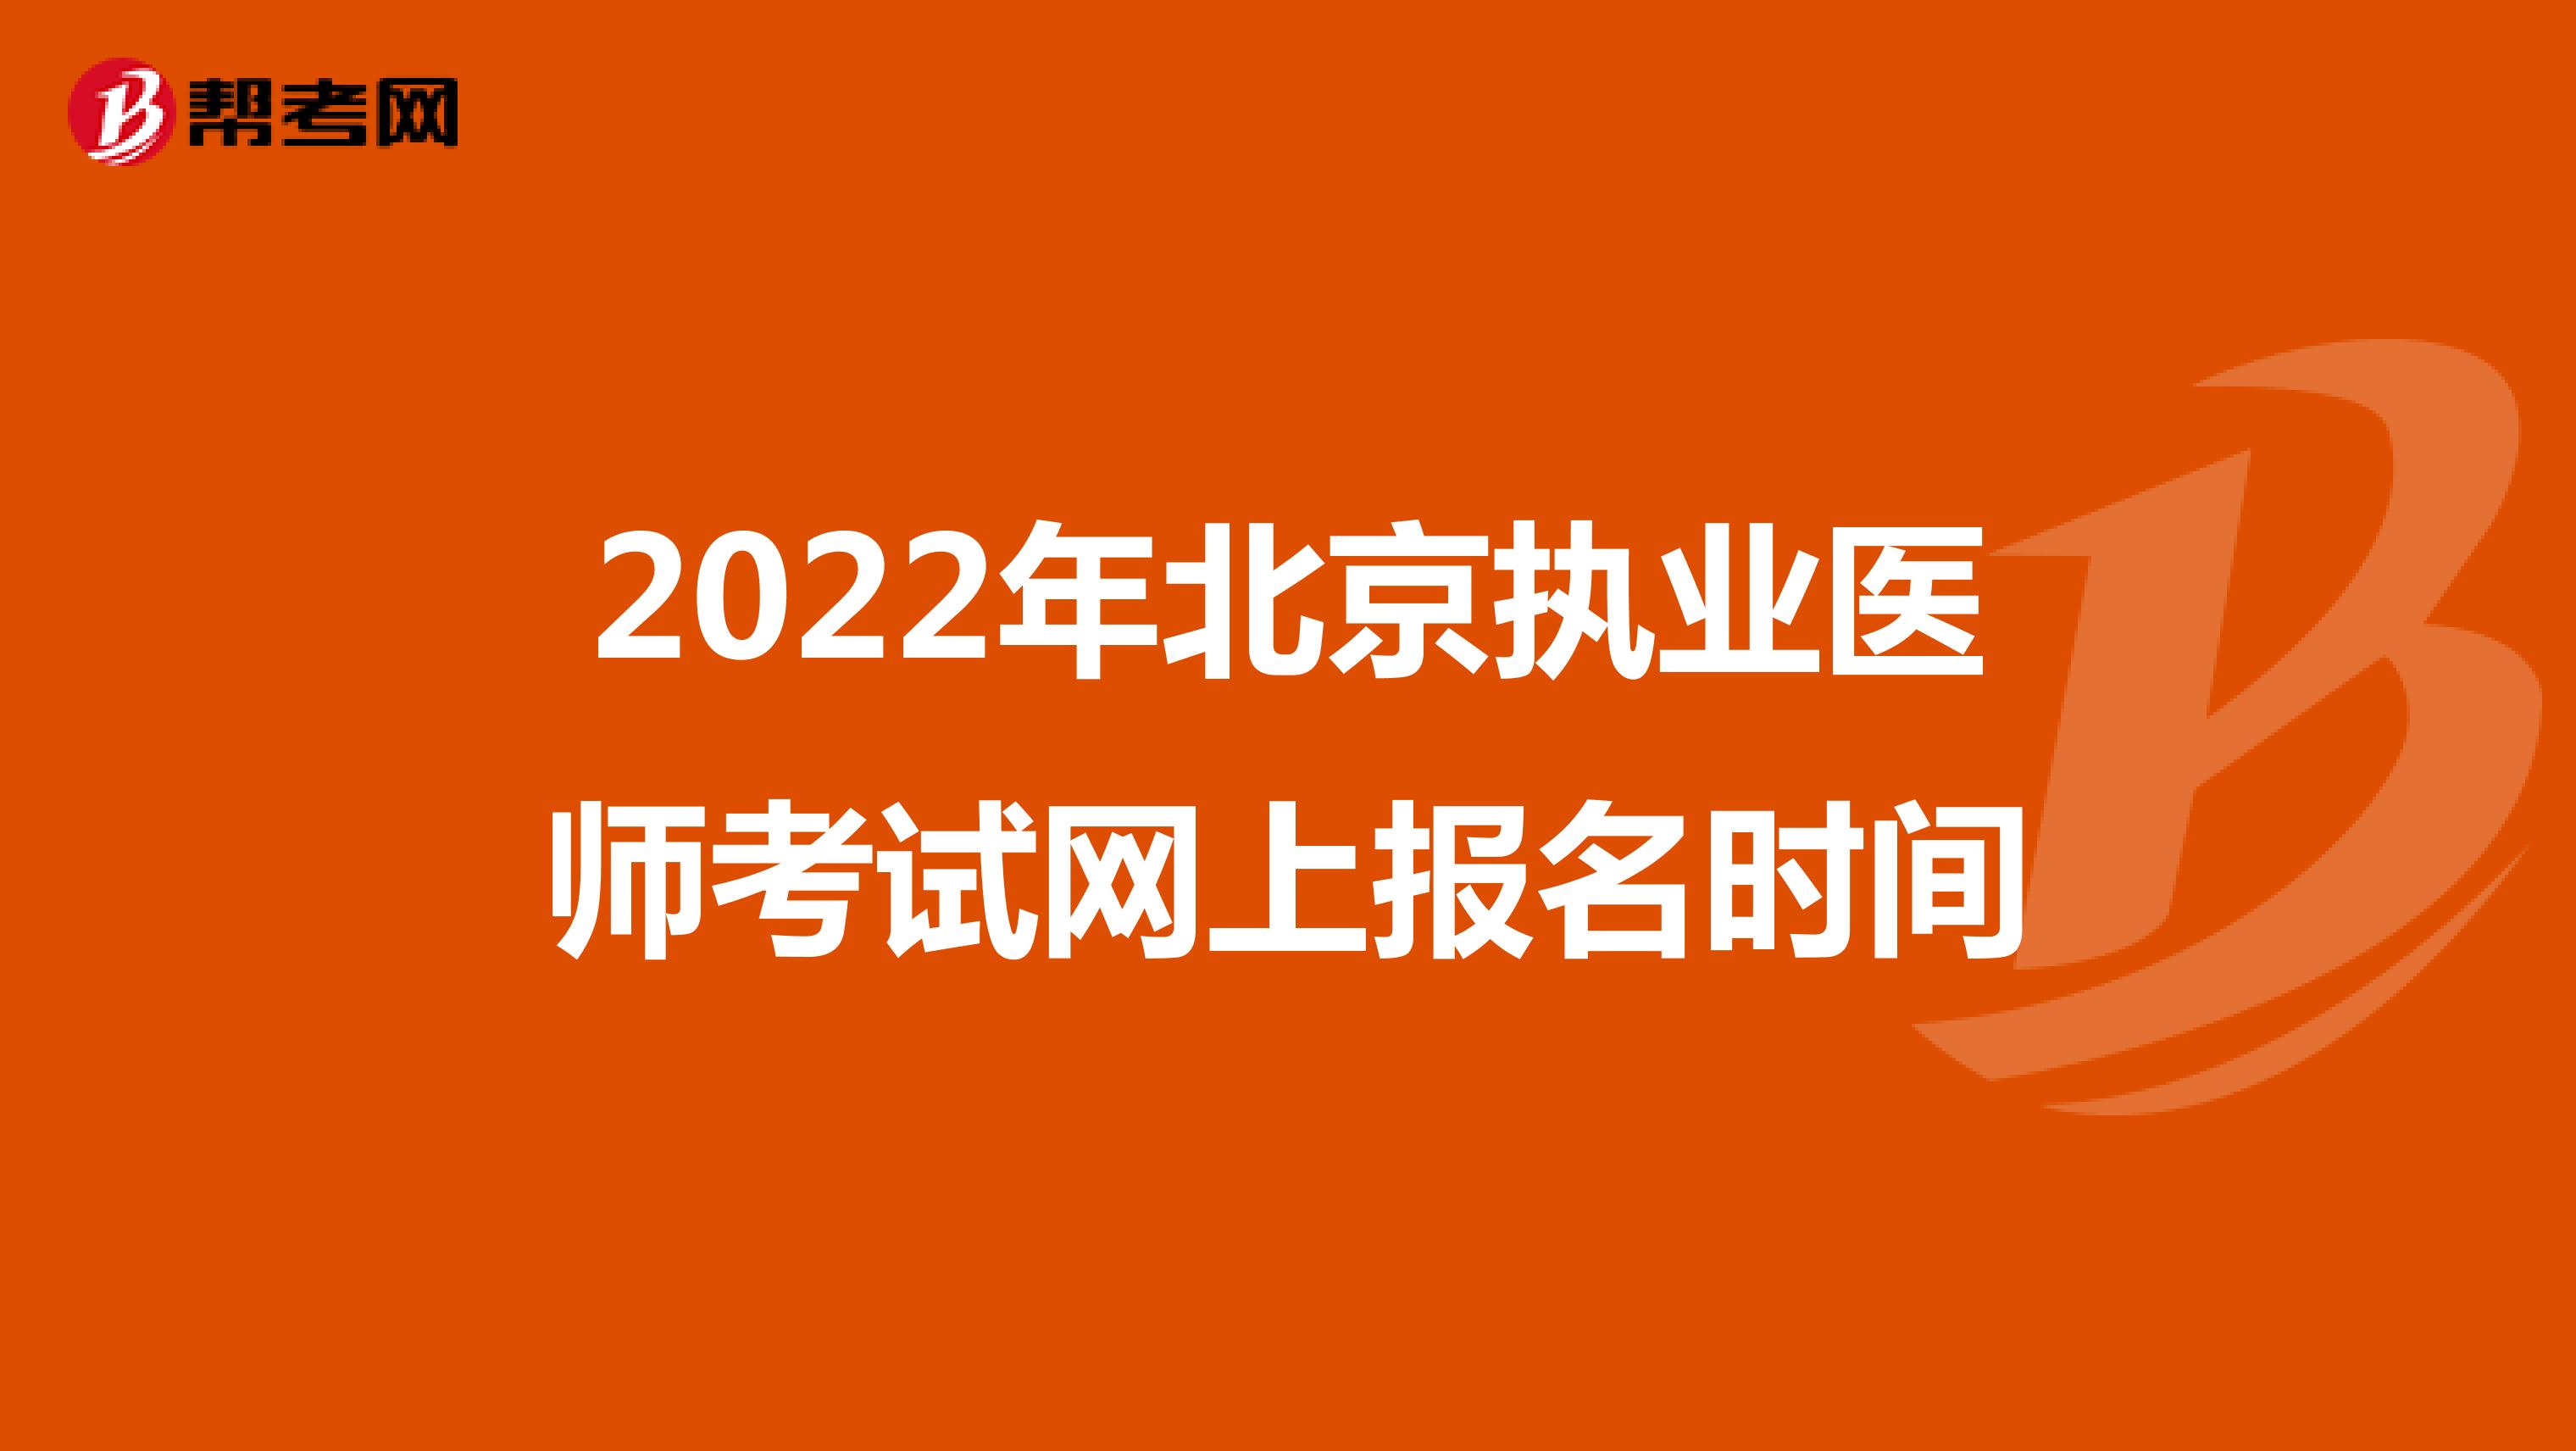 2022年北京执业医师考试网上报名时间